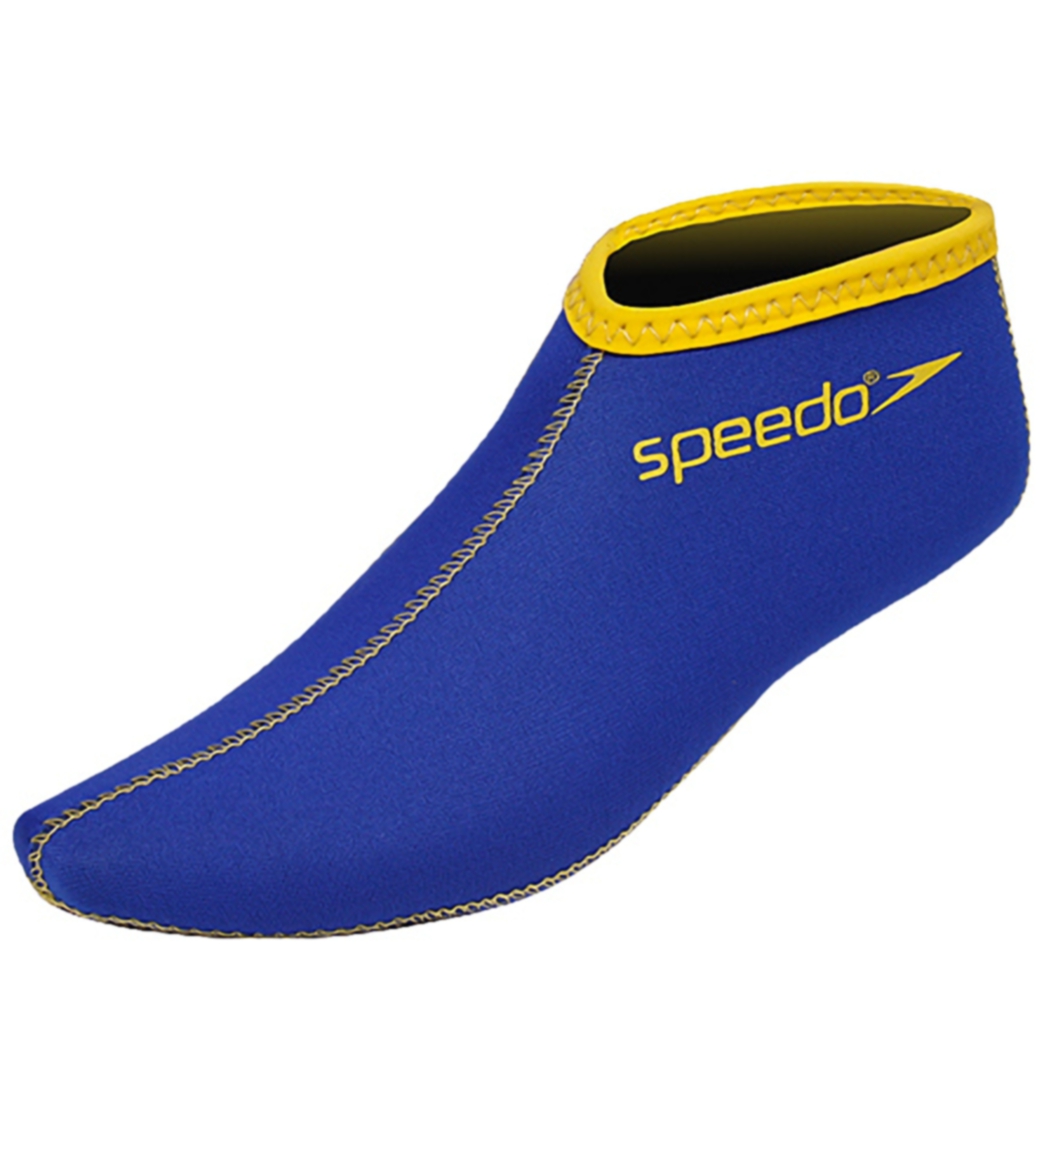 Speedo Neo Socks for Swim Fins at 